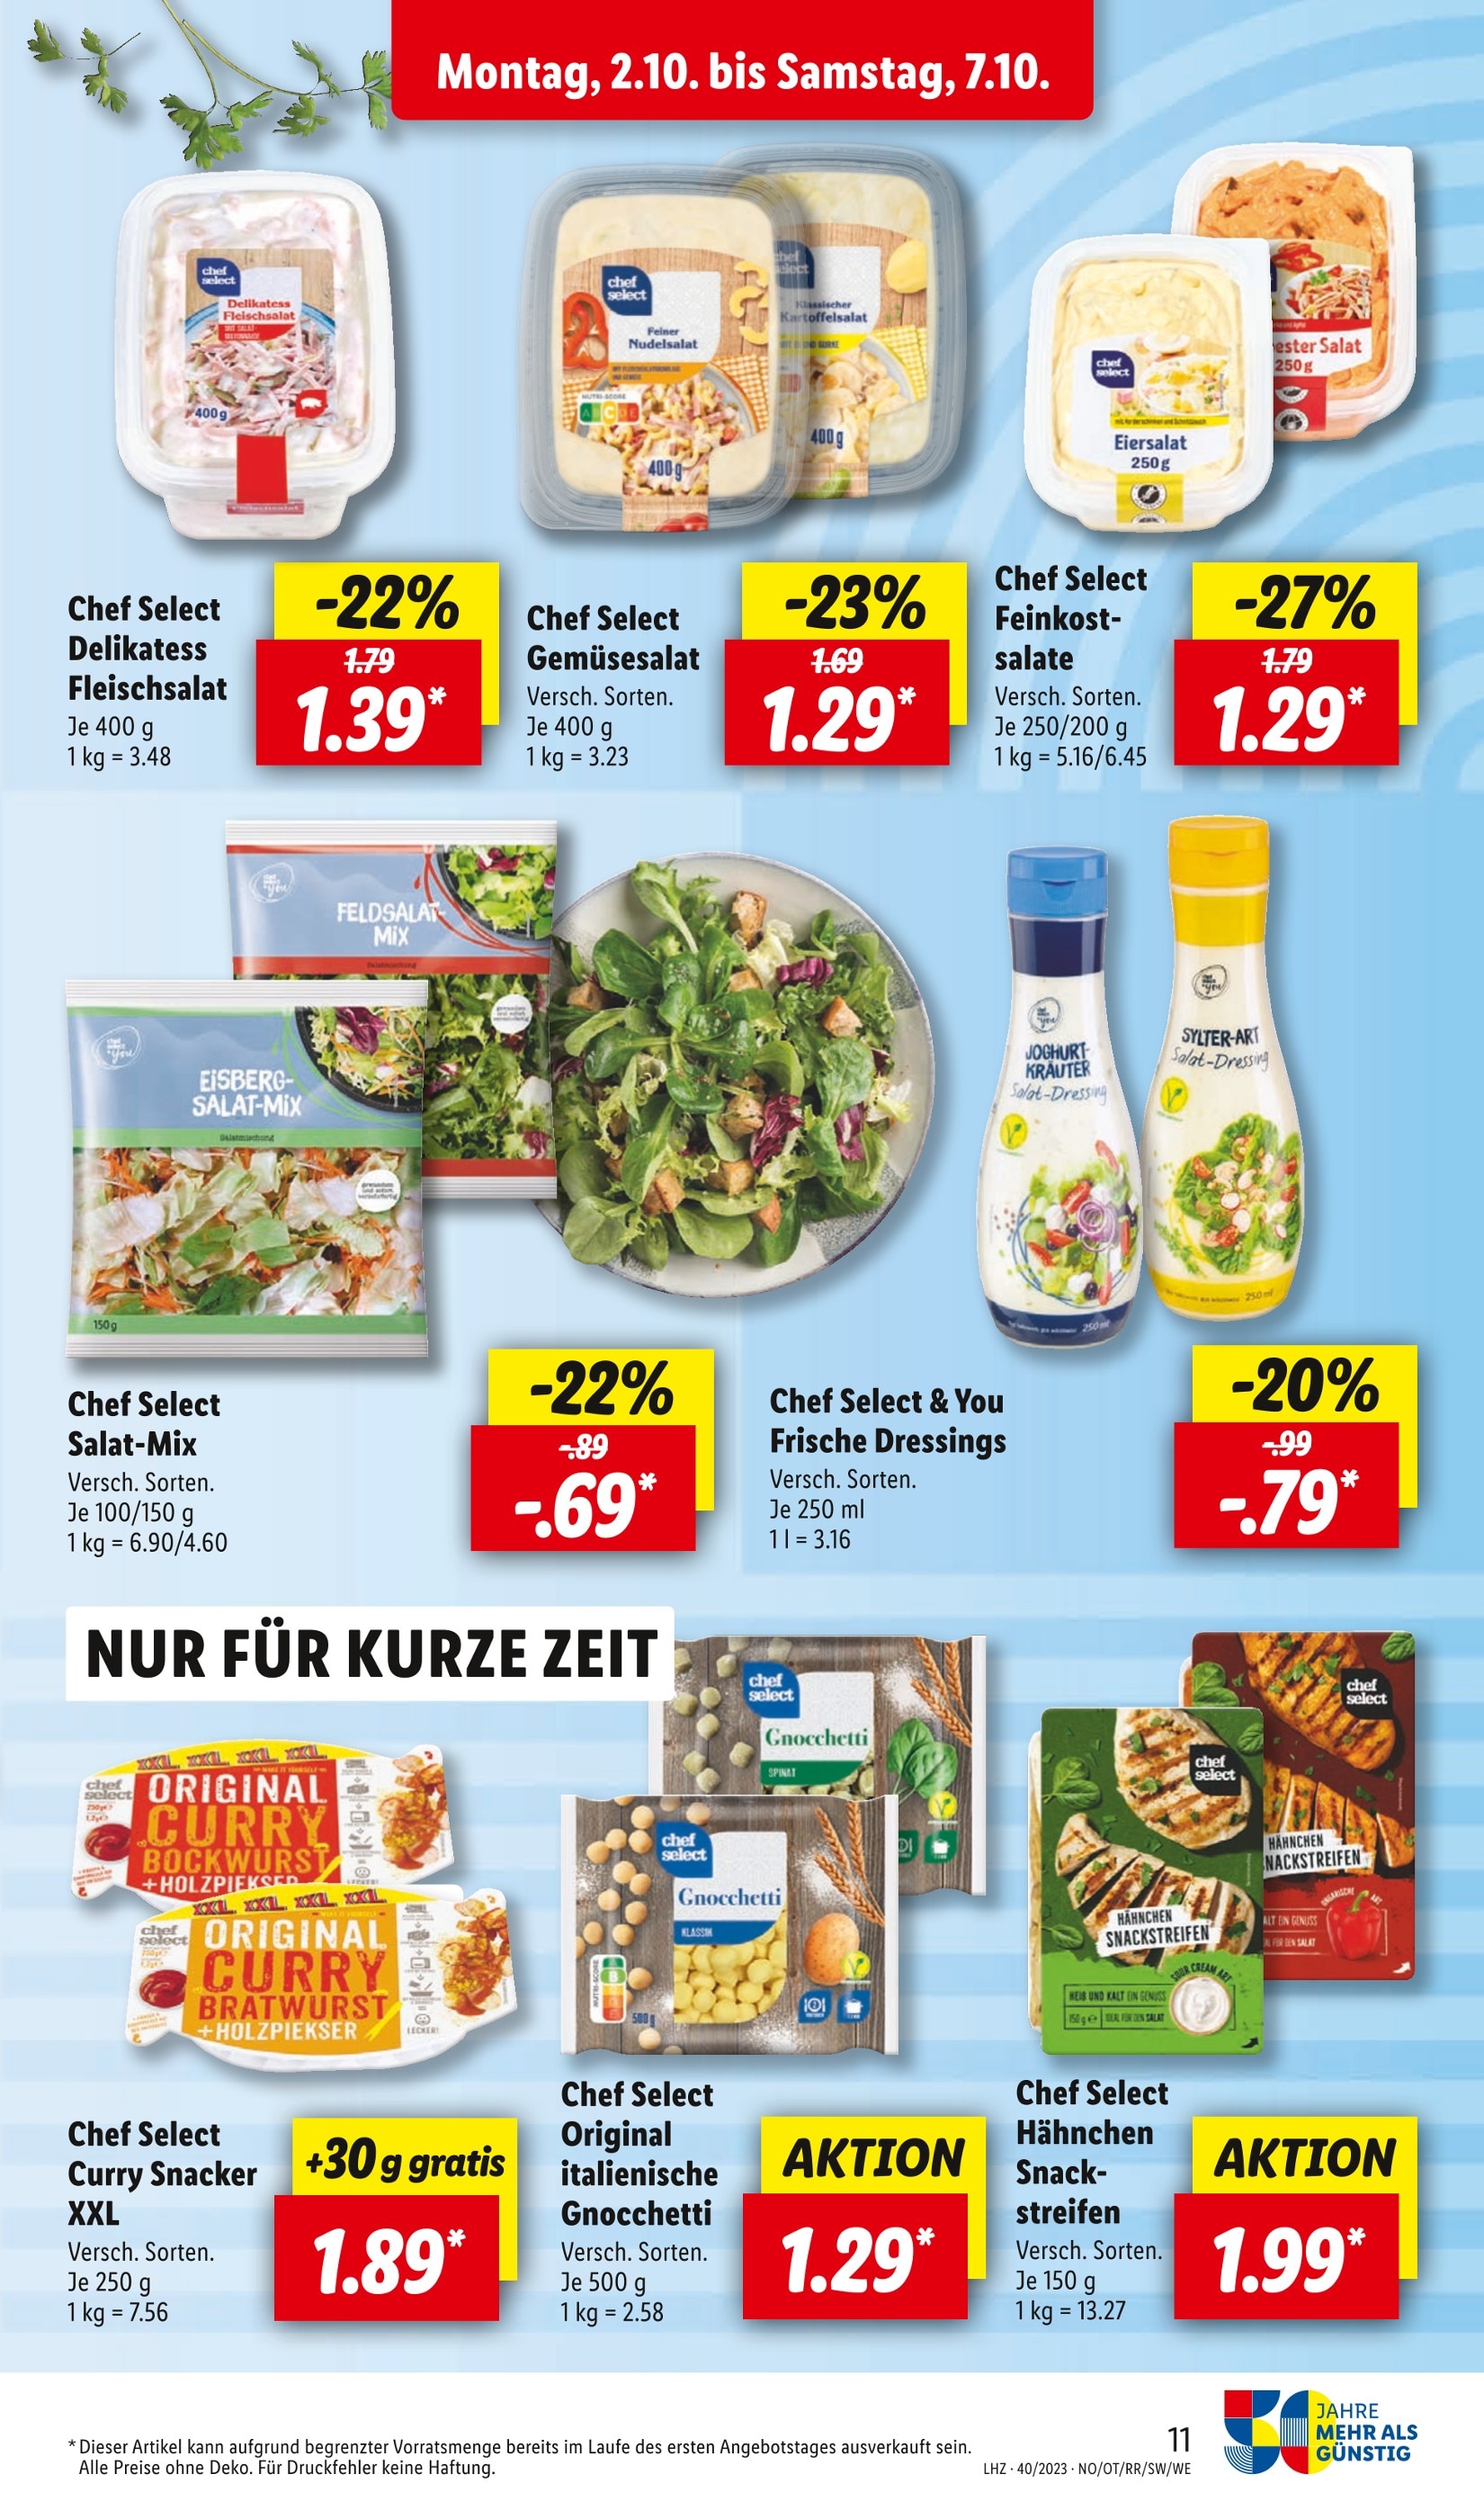 Kartoffelsalat kaufen in günstige in Angebote Heidelberg - Heidelberg